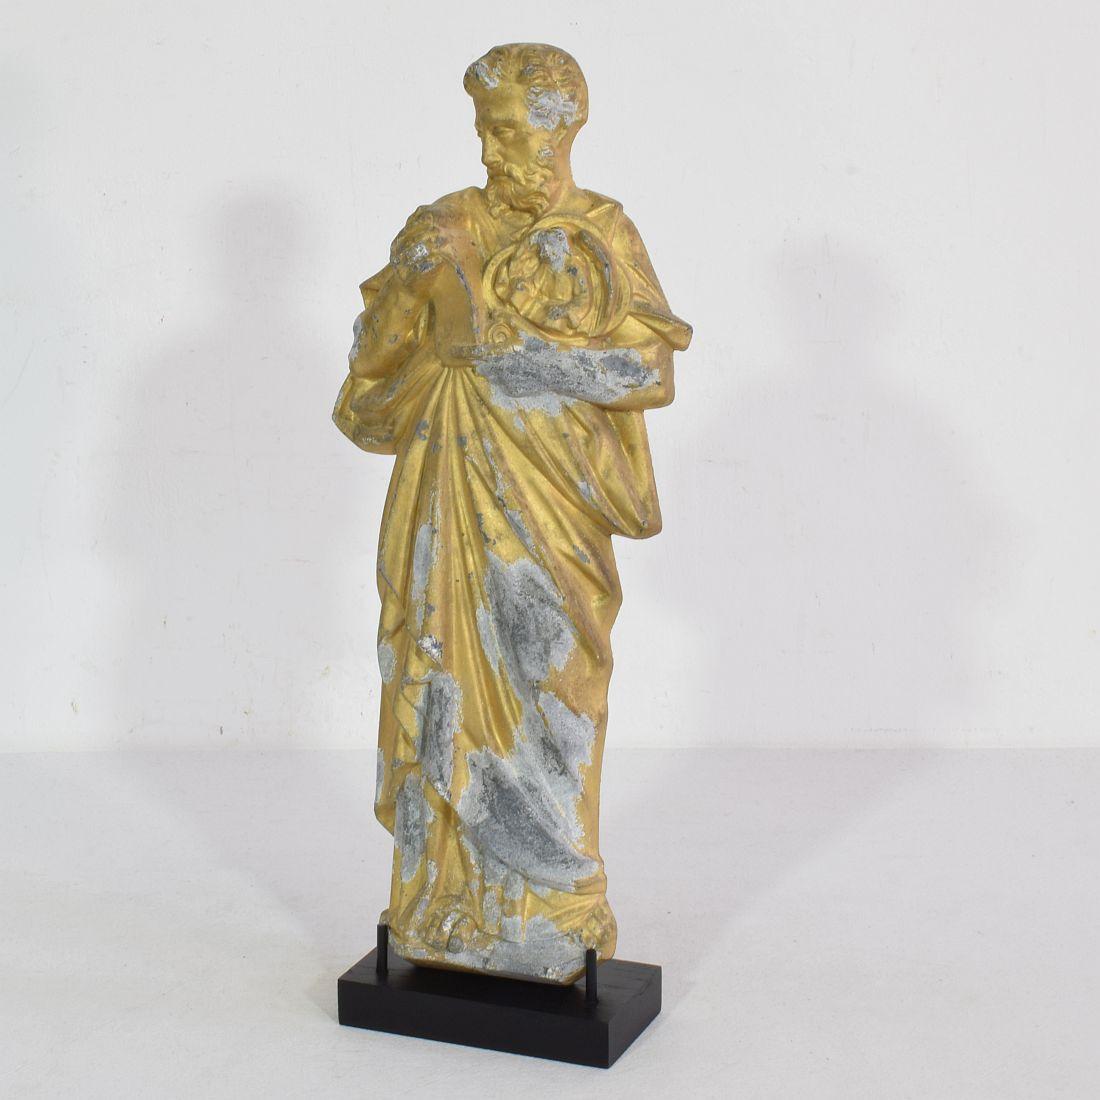 Merveilleuse statue de saint en métal doré avec une belle expression,
France, vers 1880-1900.
Météorisé. Les mesures comprennent la base en bois.